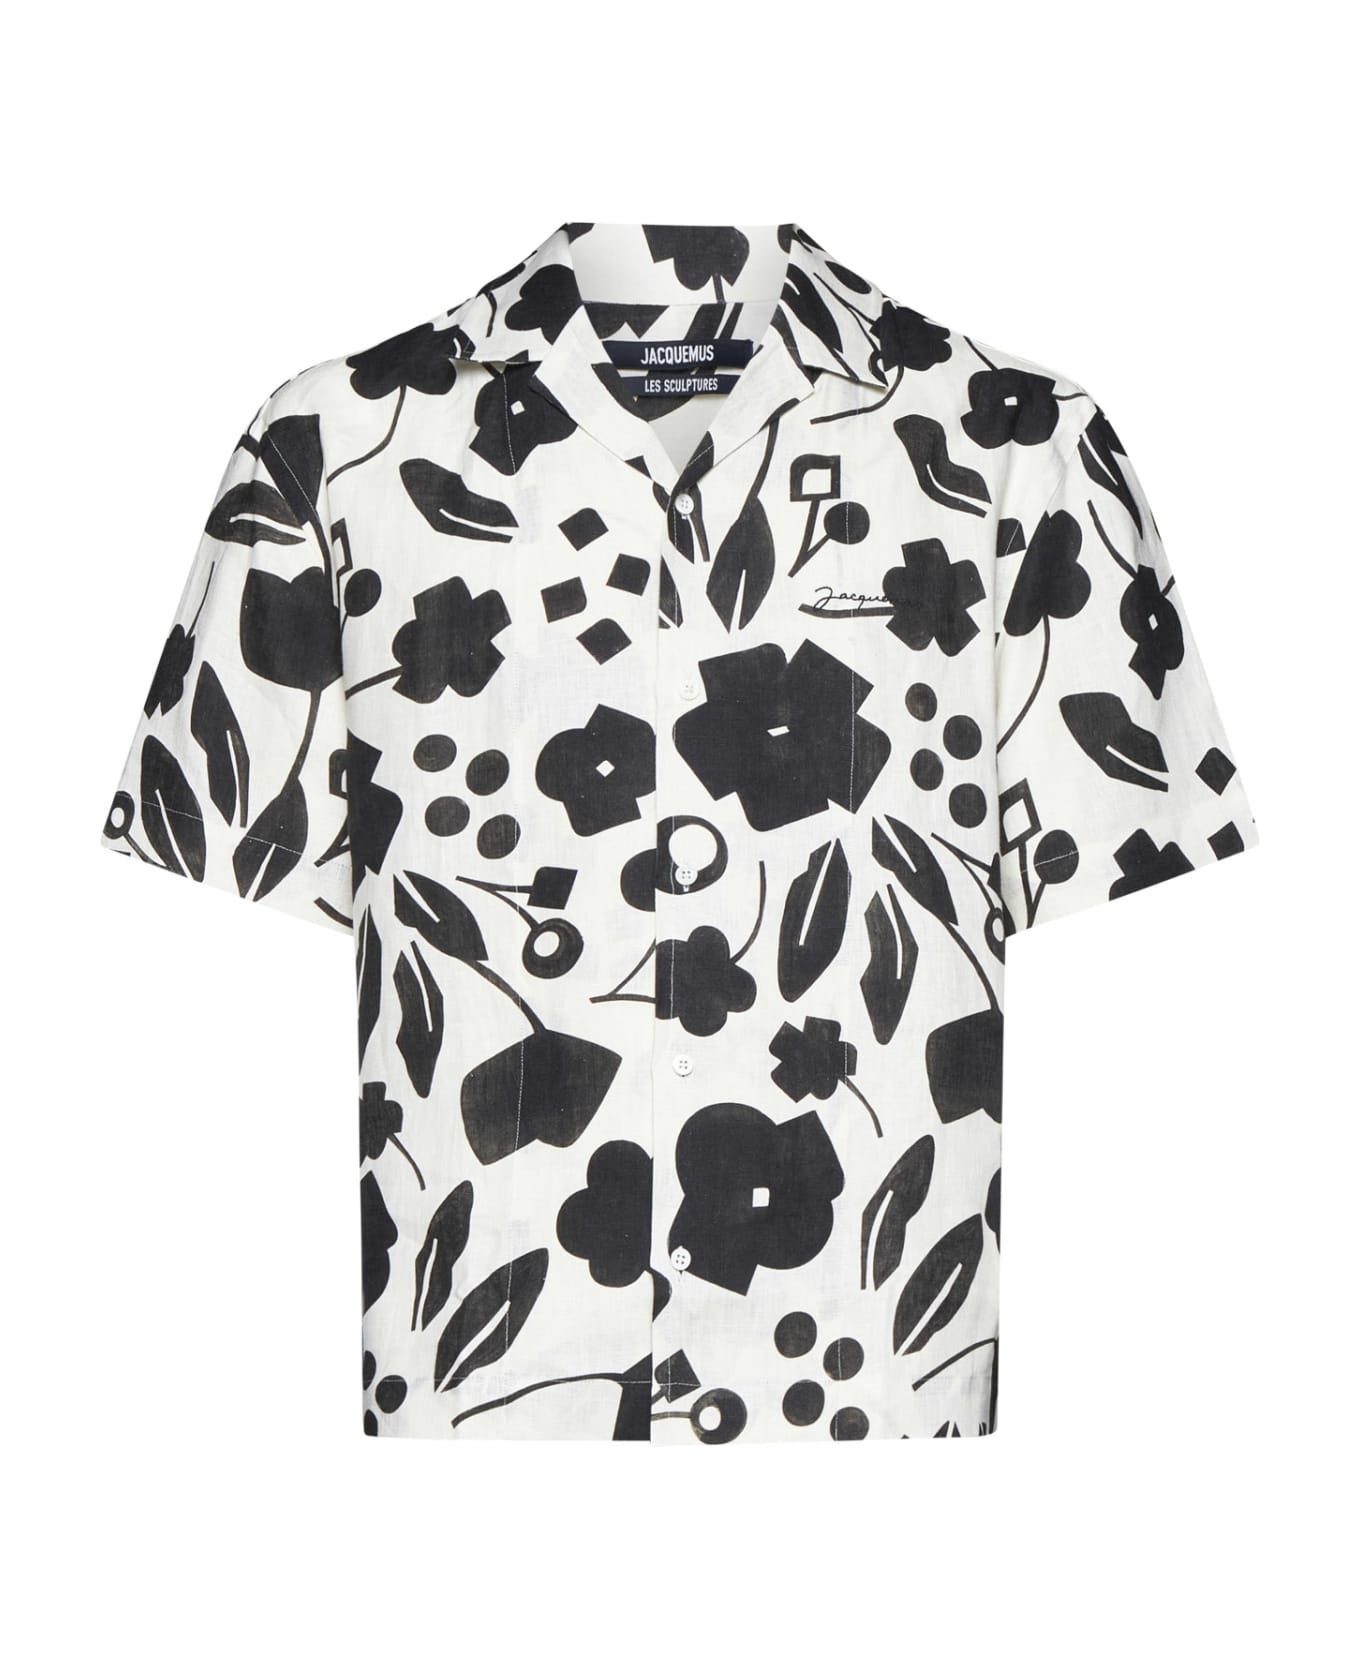 Jacquemus Shirt - Pt black white cubic flow